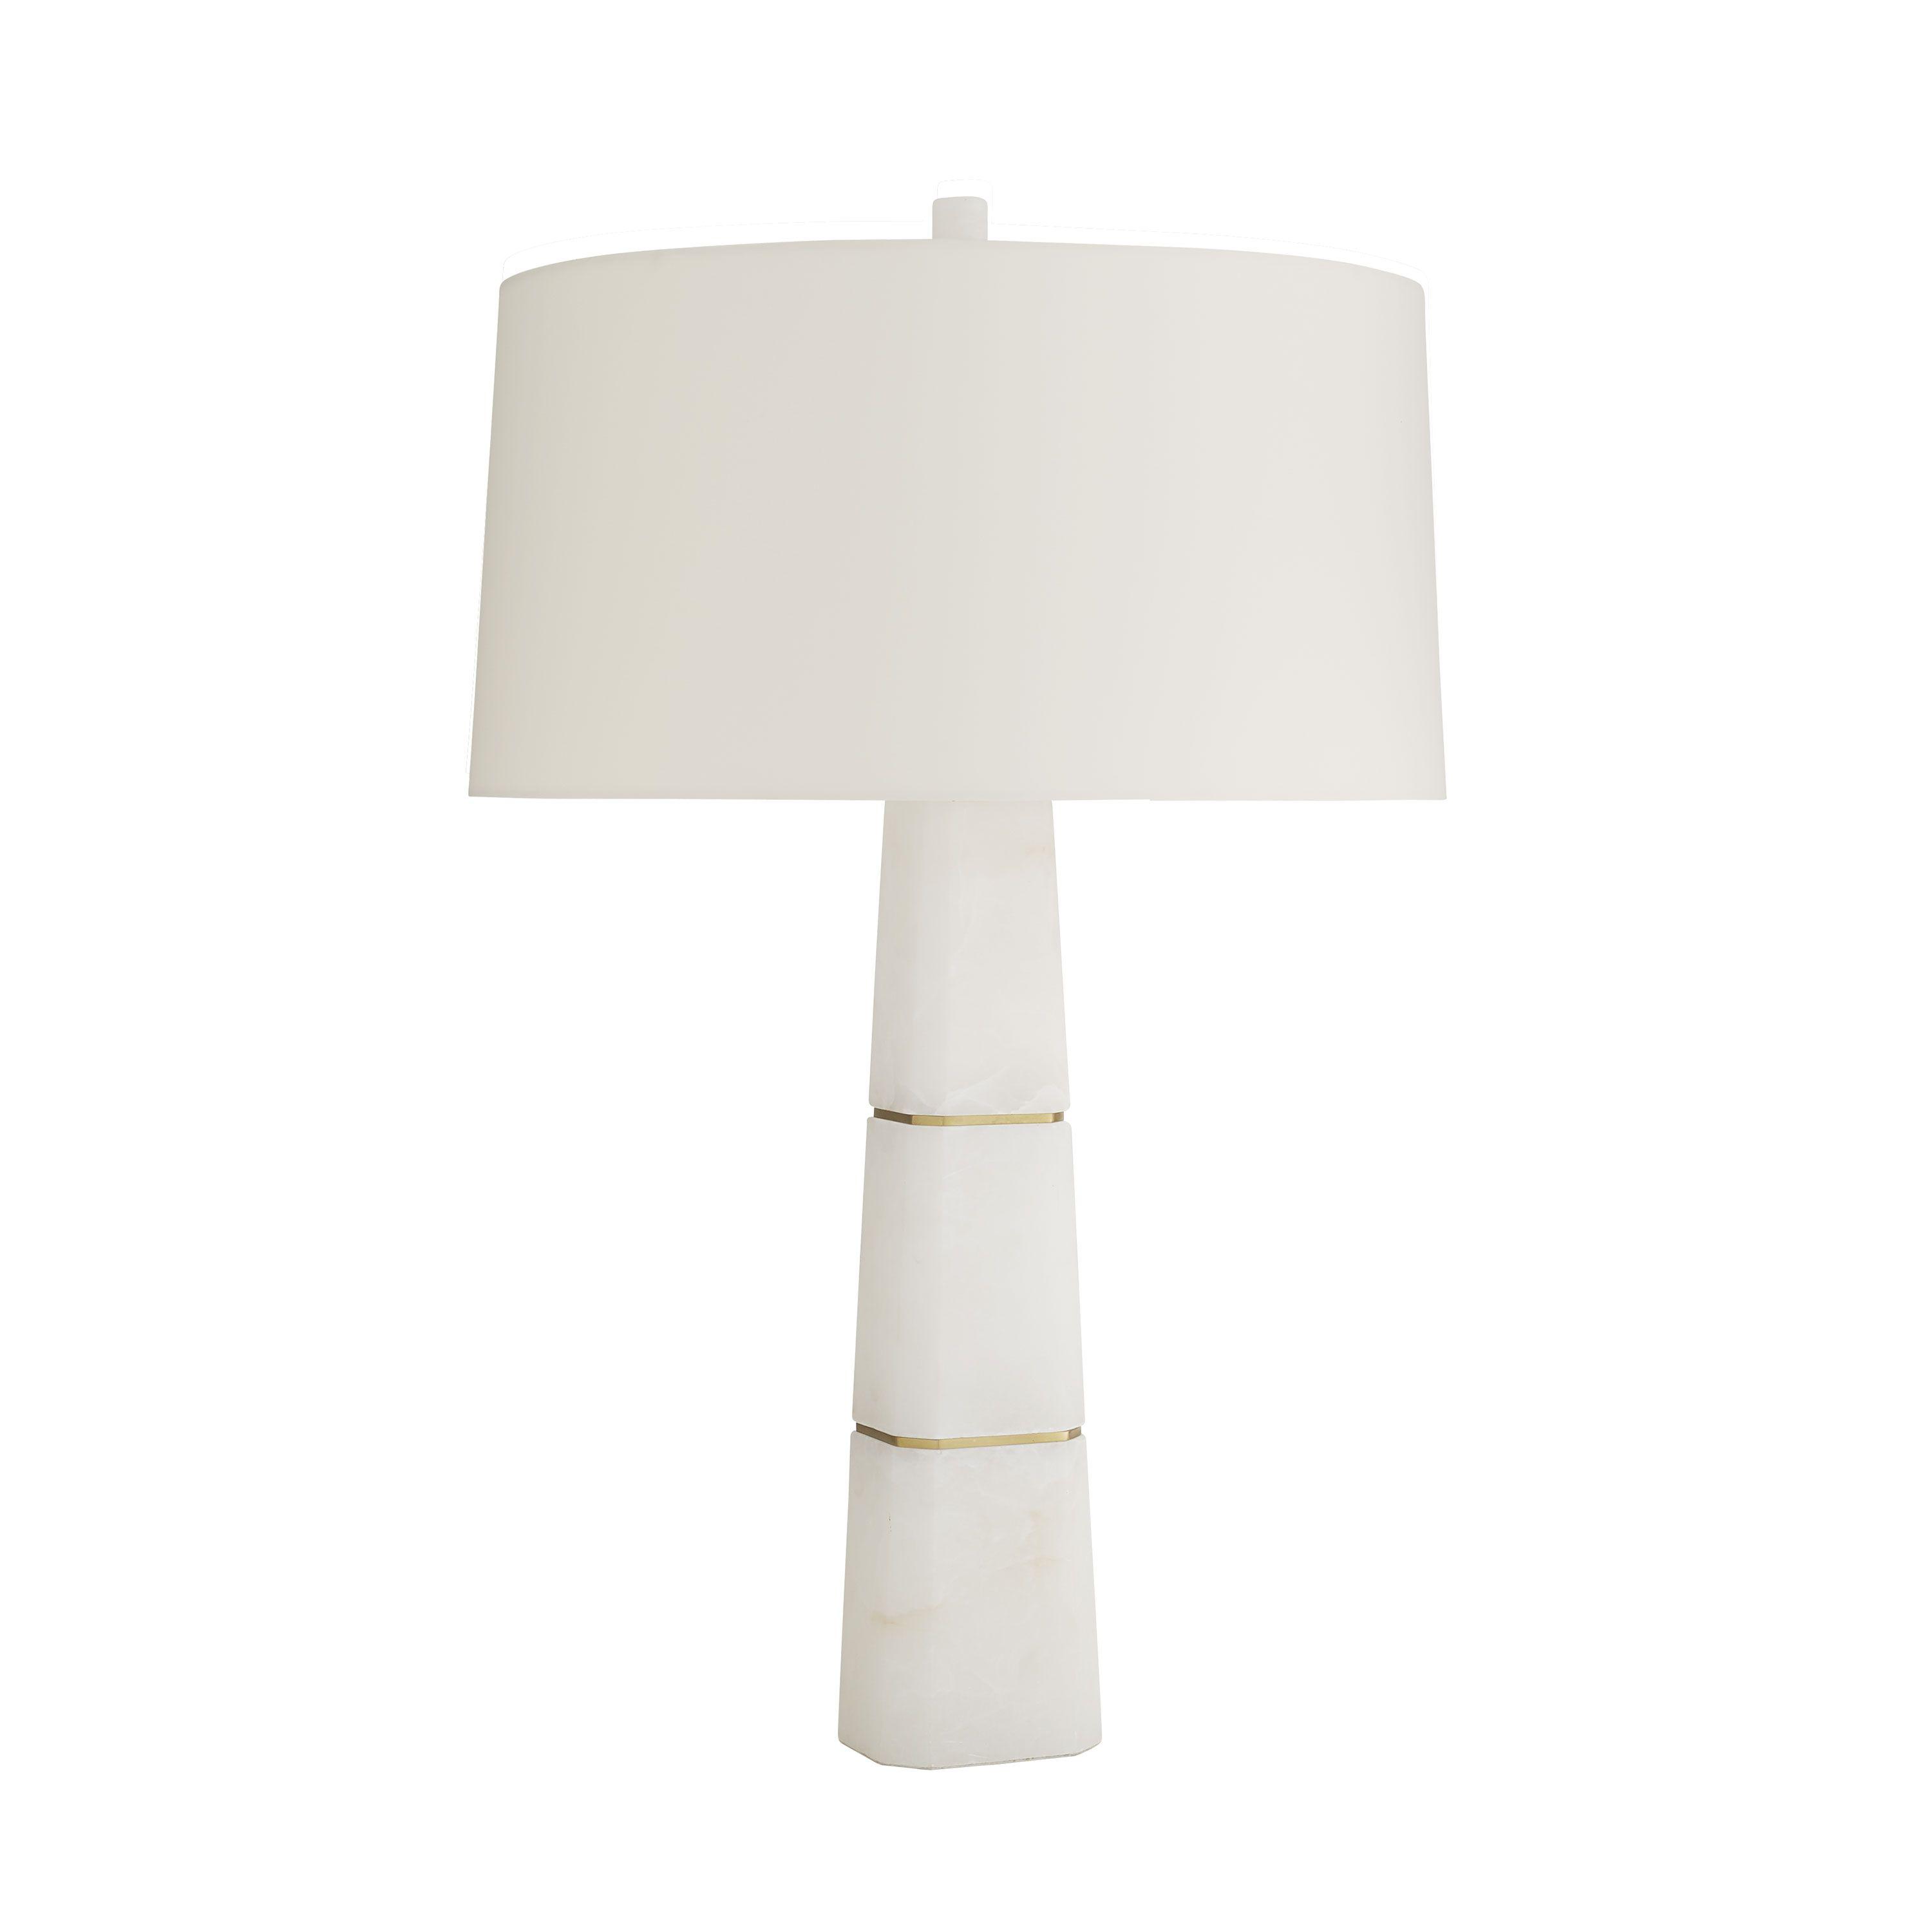 Купить Настольная лампа Dosman Lamp в интернет-магазине roooms.ru